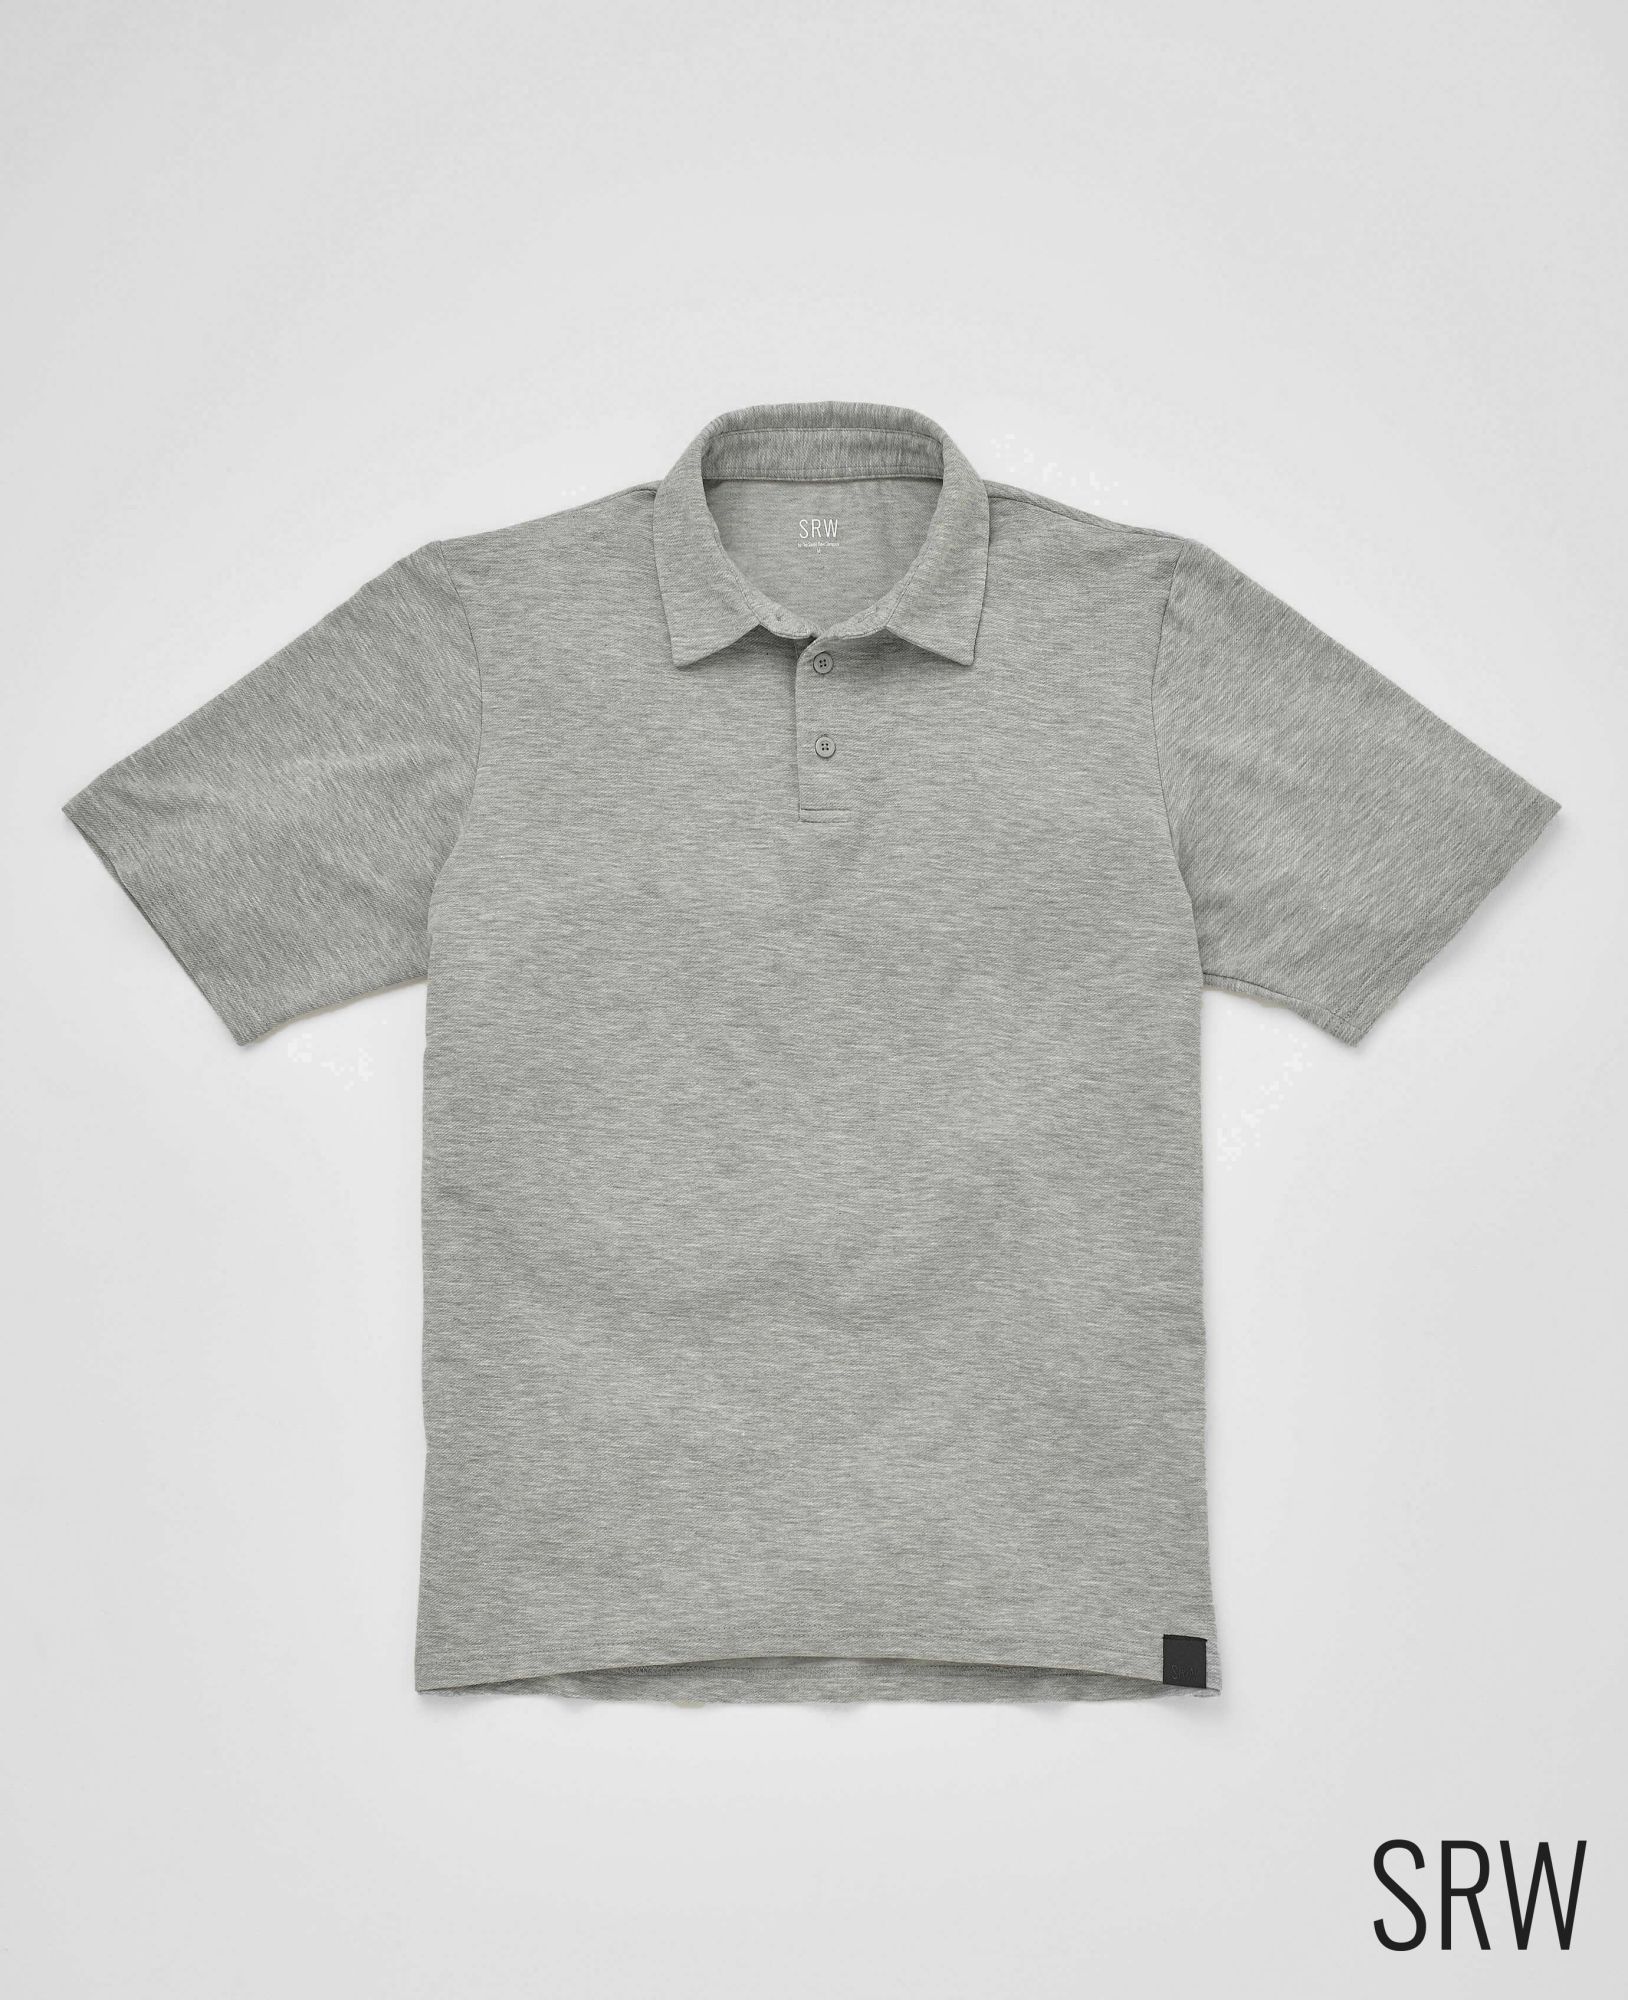 SRW Active Non-Iron Marl Grey Short Sleeve Polo Shirt XXL